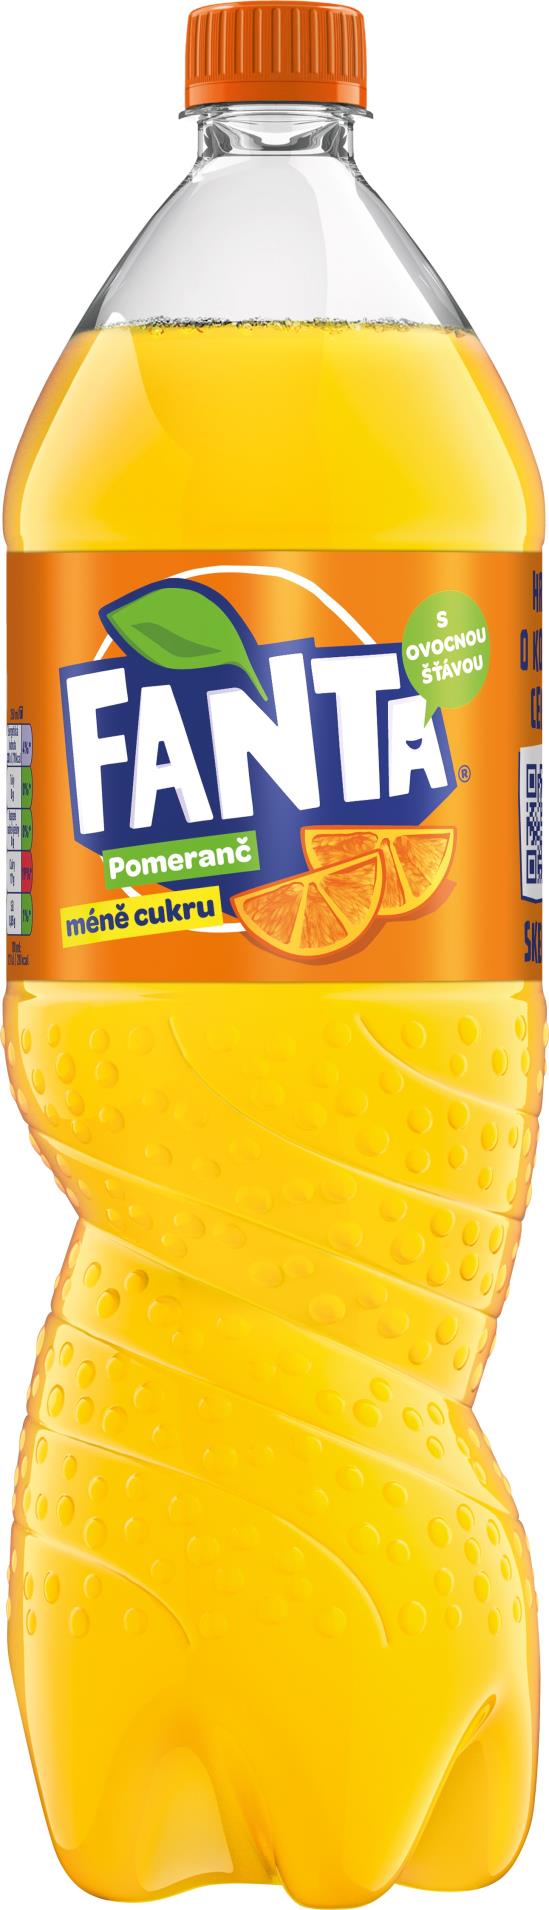 Fanta Fanta pomeranč - 6x 1,75 l, plast